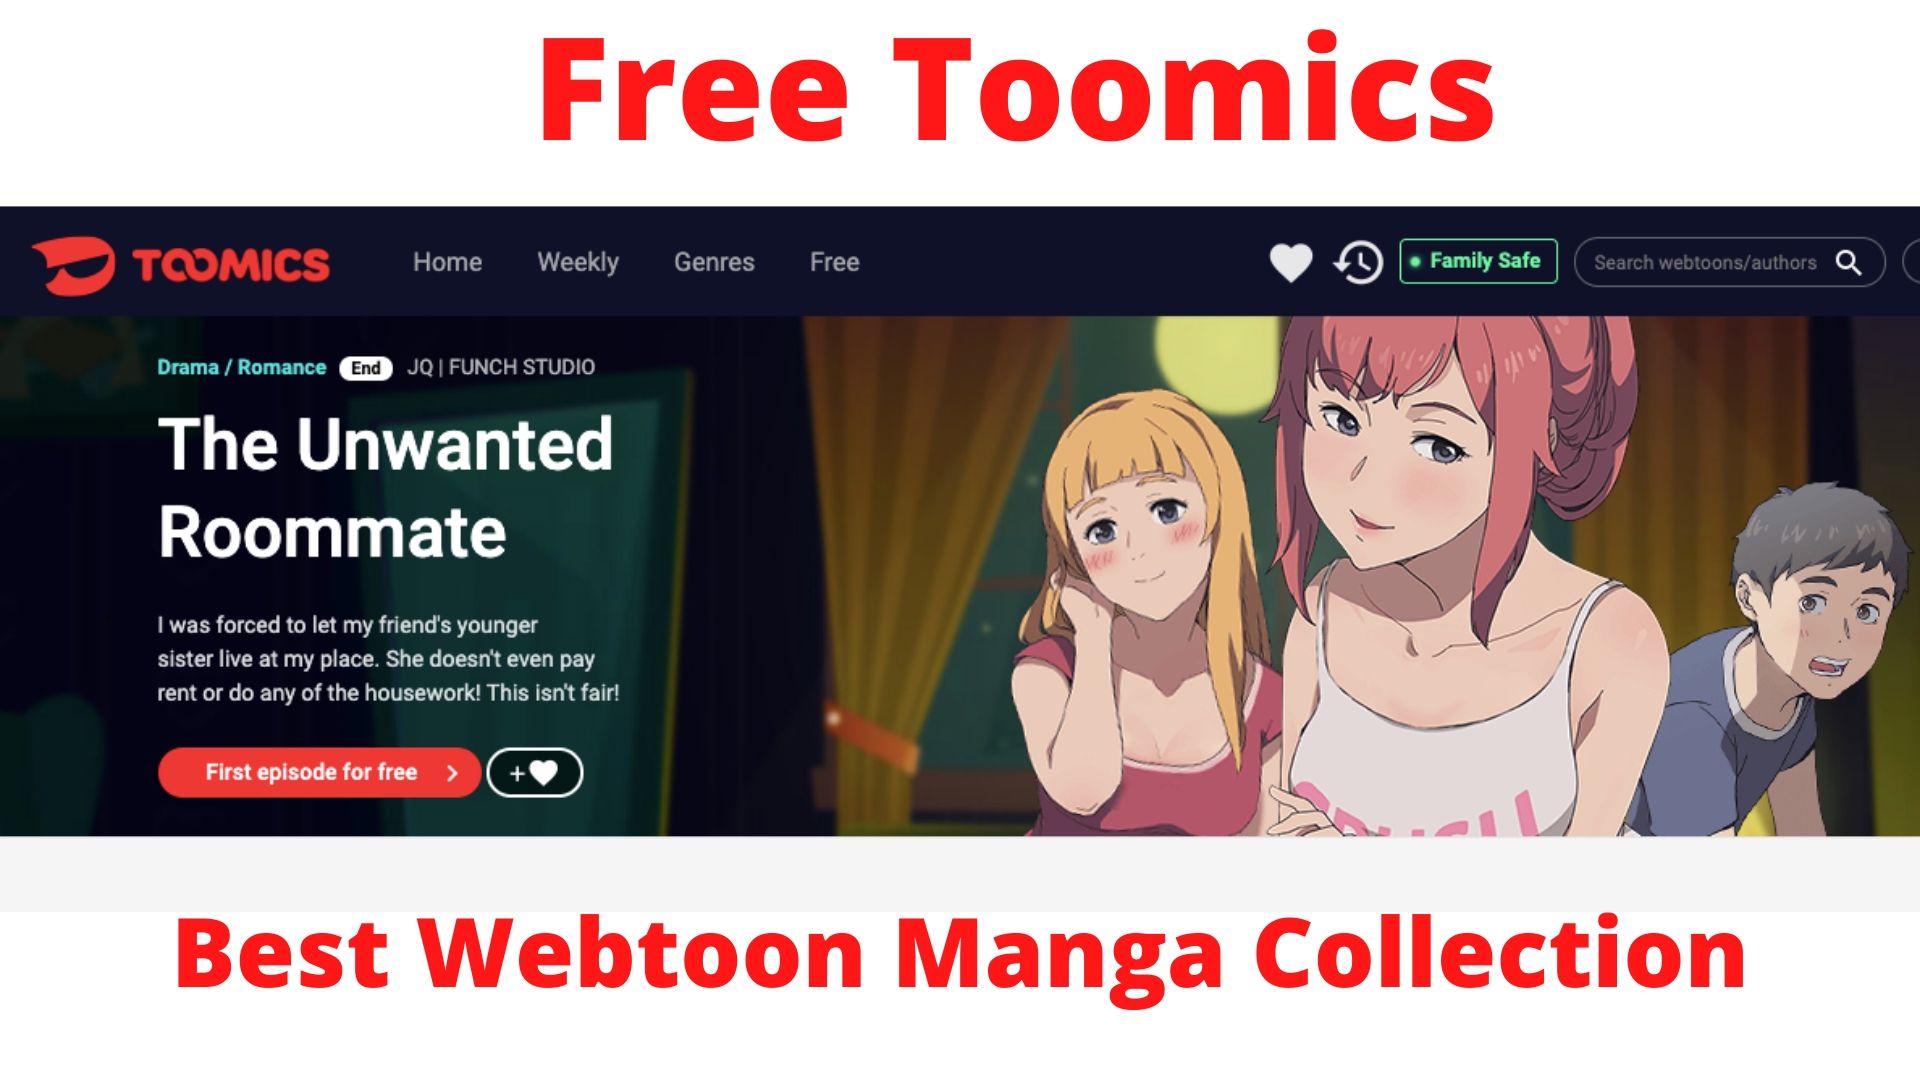 Free Toomics